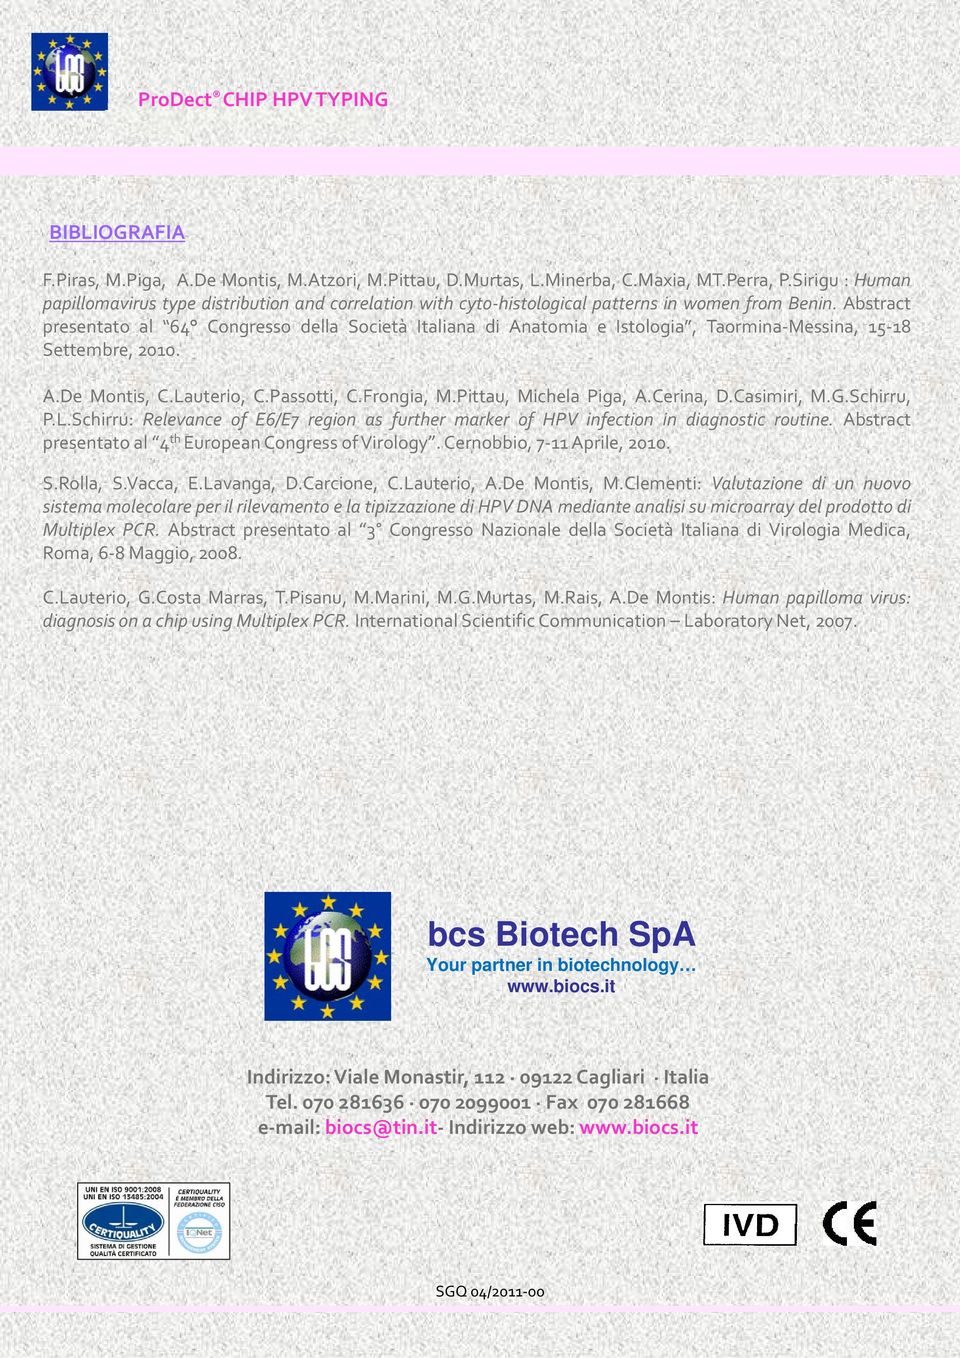 Abstract presentato al 64 Congresso della Società Italiana di Anatomia e Istologia, Taormina Messina, 15 18 Settembre, 2010. A.De Montis, C.Lauterio, C.Passotti, C.Frongia, M.Pittau, Michela Piga, A.